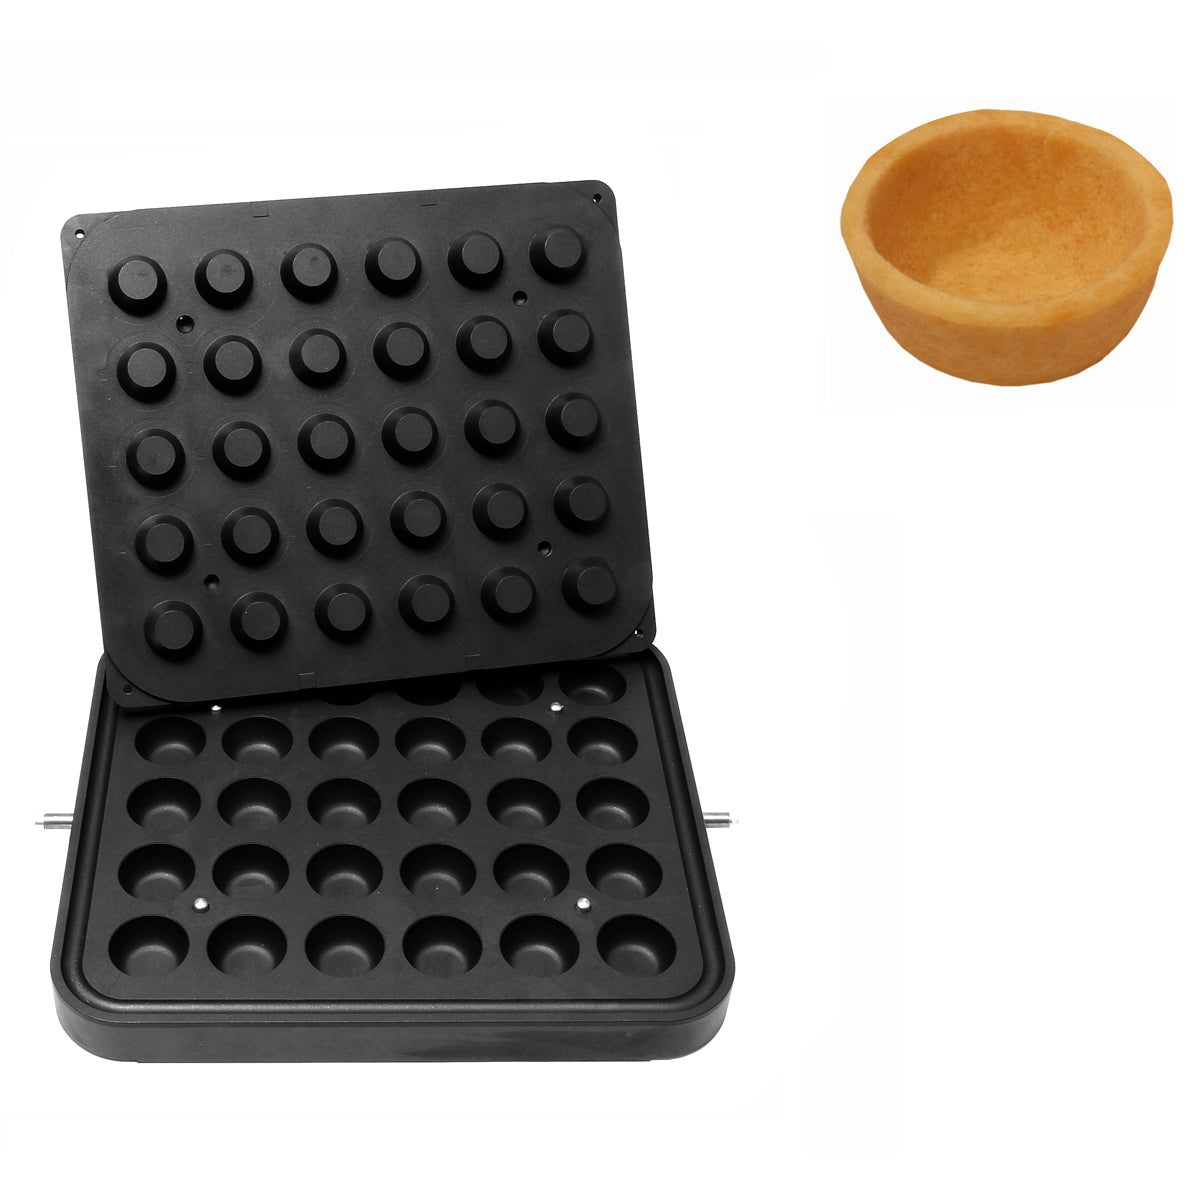 Plade til cupcake-maskine - Form: Rund - Ø 45 mm / Højde: 19,5 mm